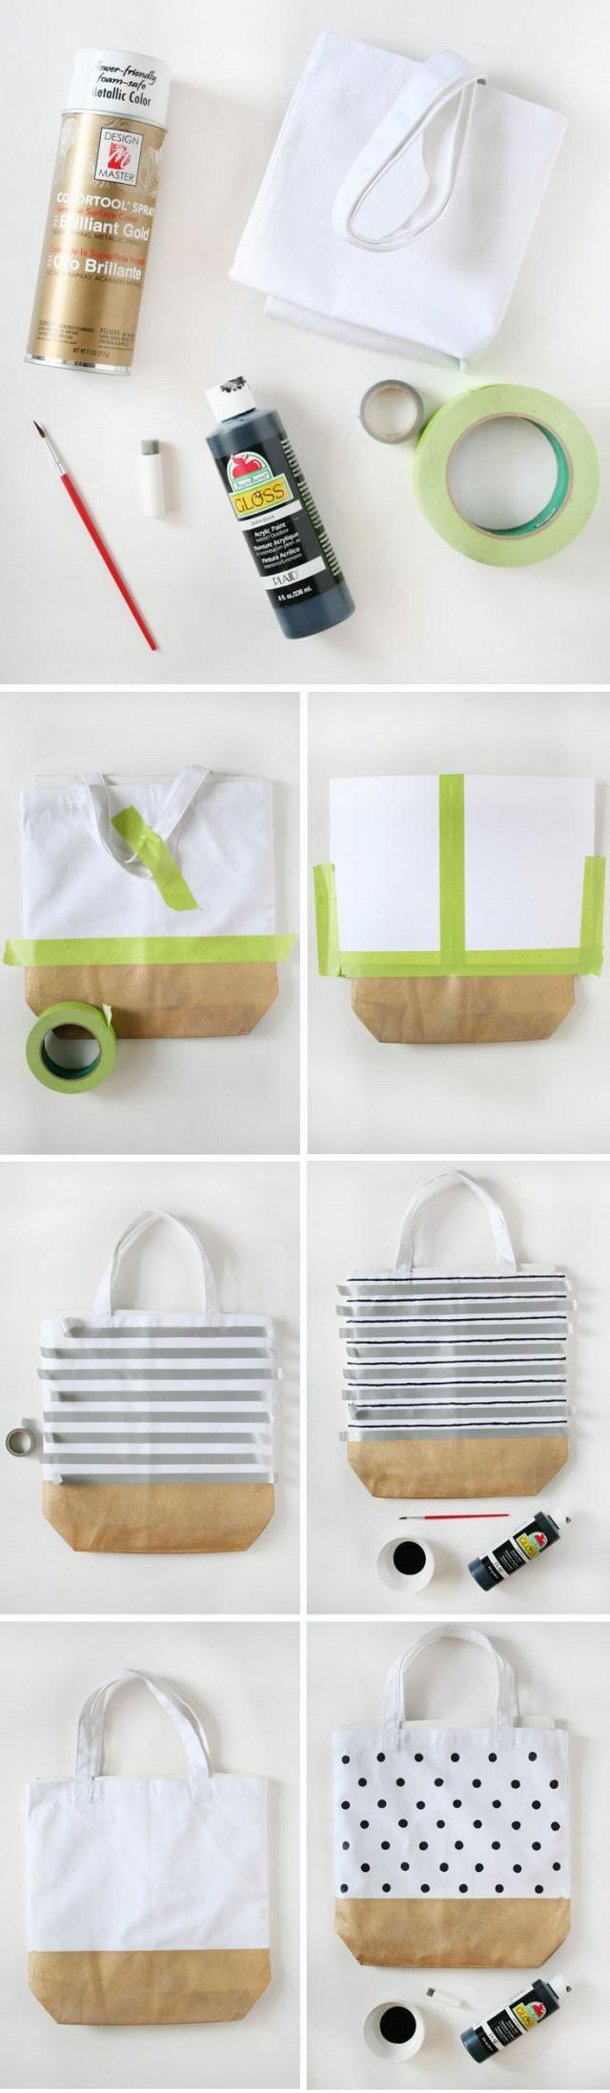 Zobacz jak zrobić ozdobną torbę